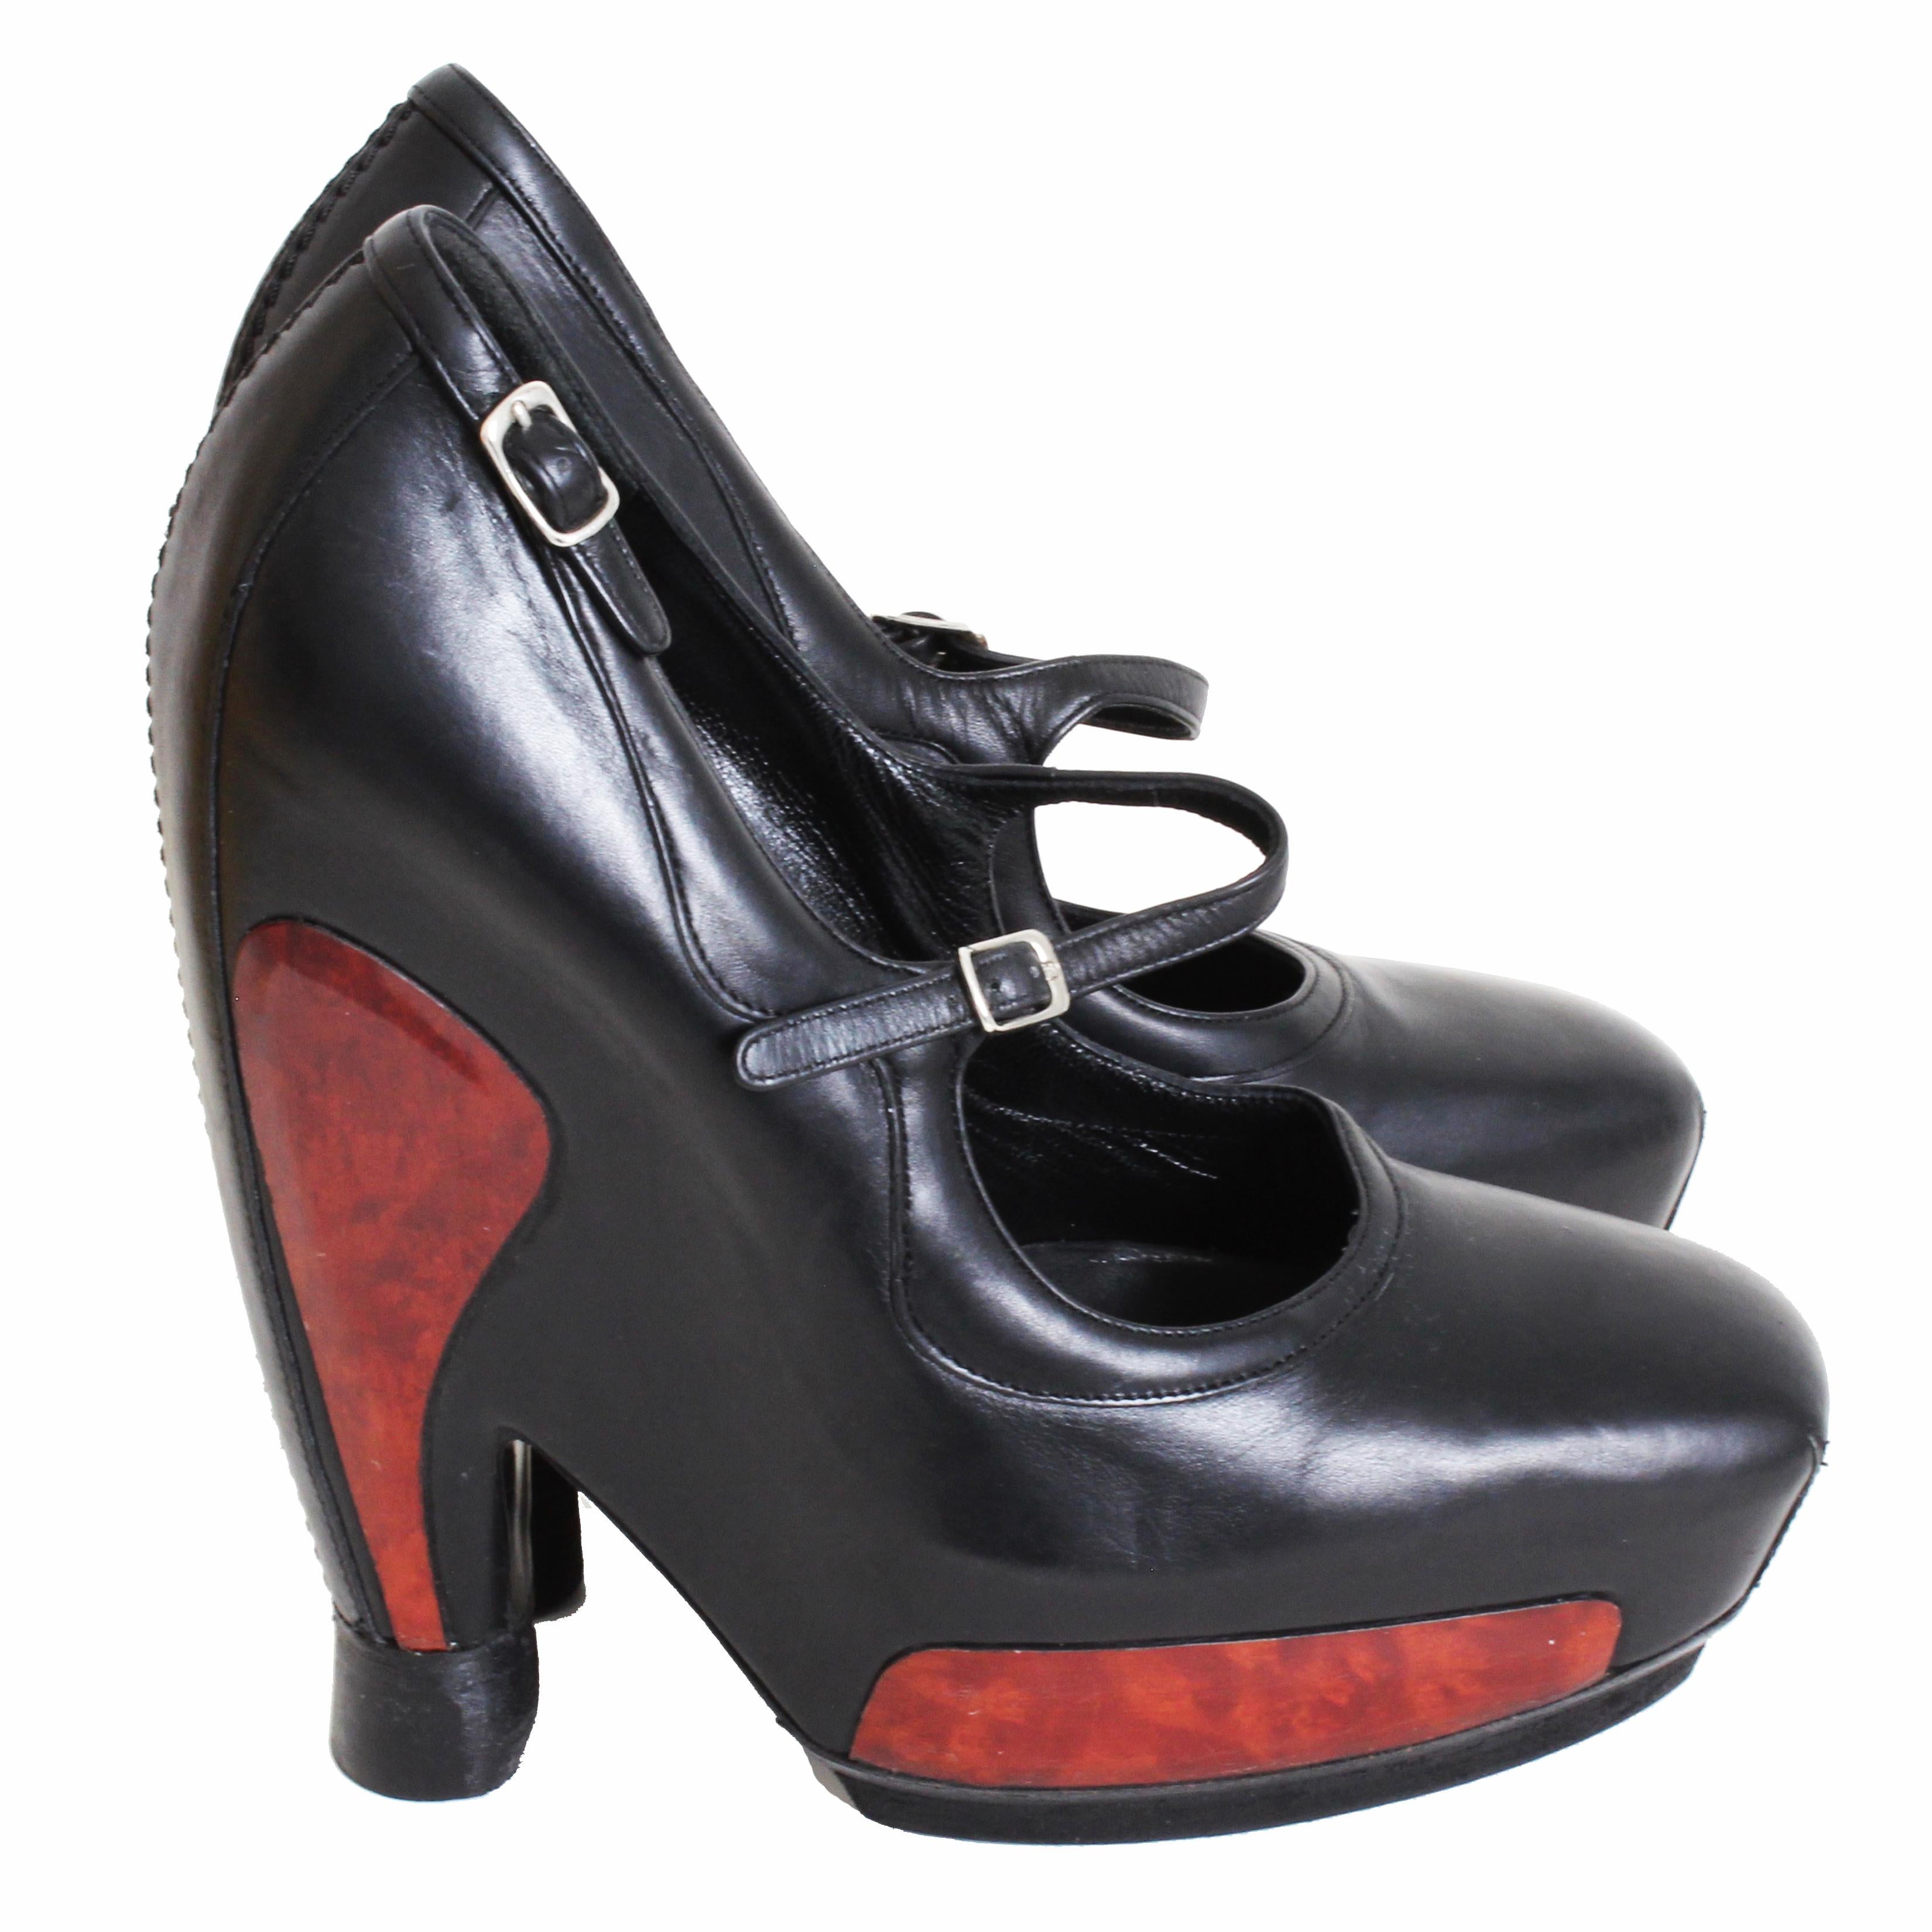 Chaussures à talons iconiques Mary Jane en cuir noir de Balenciaga de la collection F/W 2006 de Nicolas Ghesquière.  Confectionnées en cuir noir, elles sont dotées d'une fine bride Mary Jane sur l'empeigne et le contrefort, ainsi que d'empiècements